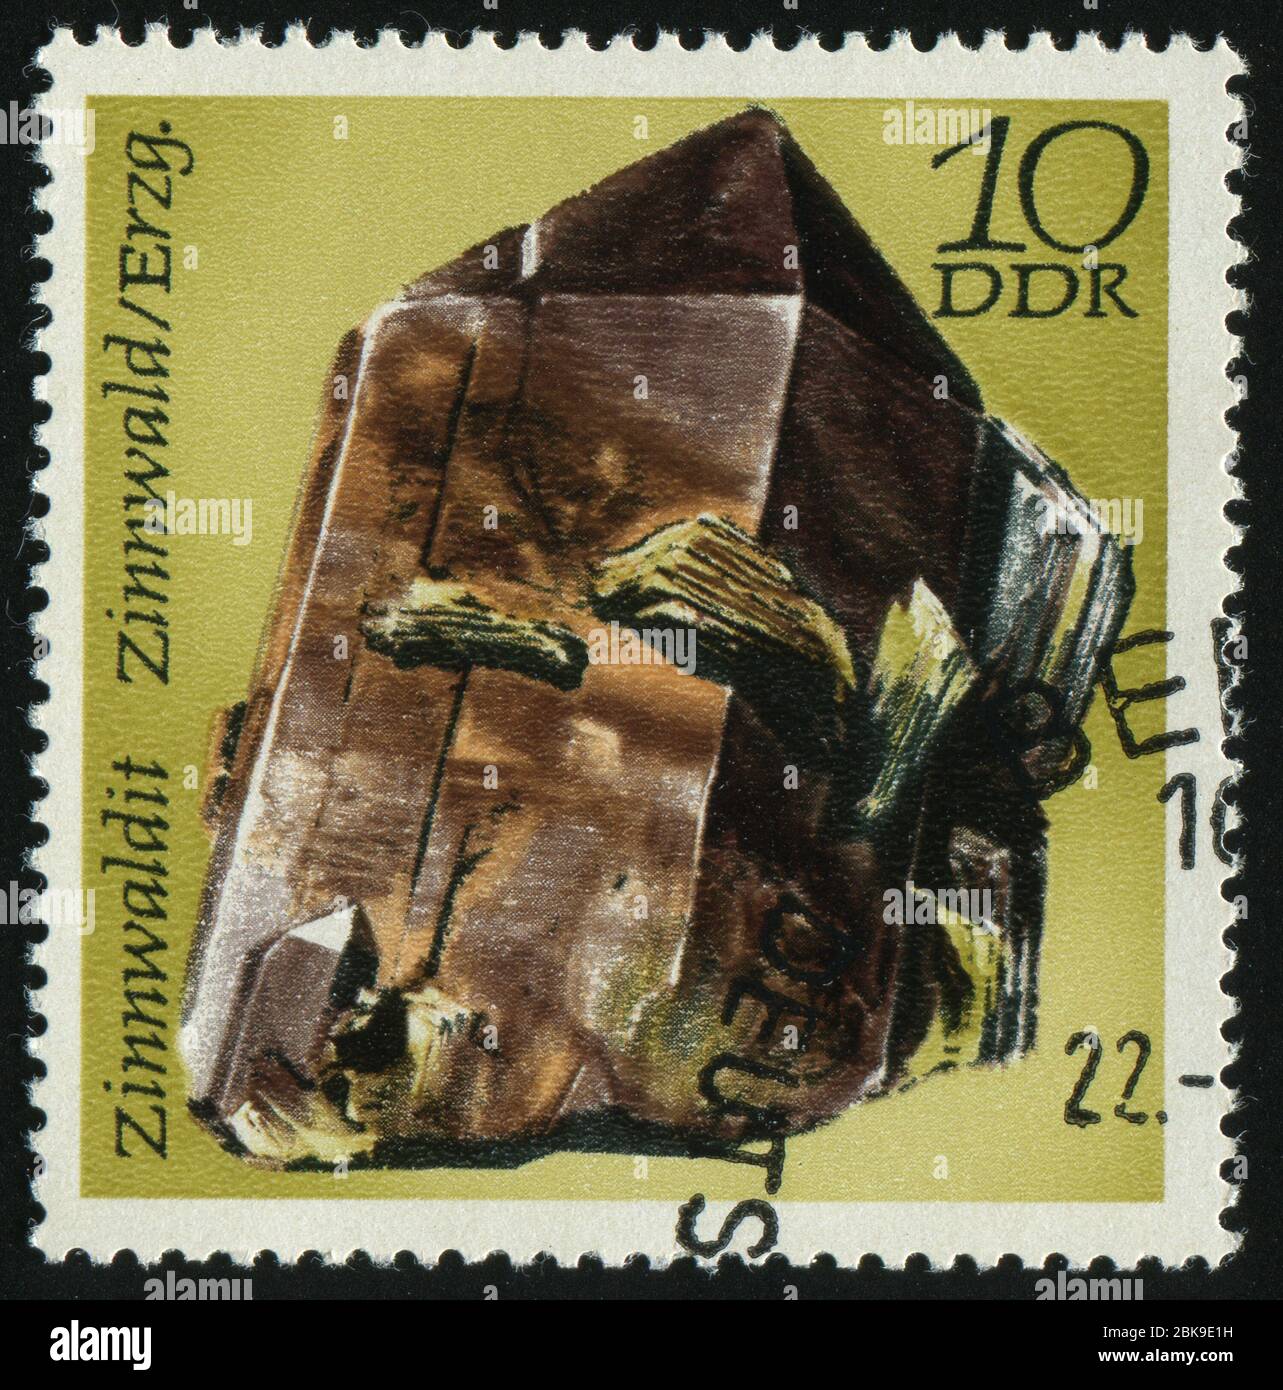 DEUTSCHLAND- UM 1972: Briefmarke gedruckt von Deutschland, zeigt Mineralien Zinnwaldite, Zinnwald, um 1972. Stockfoto